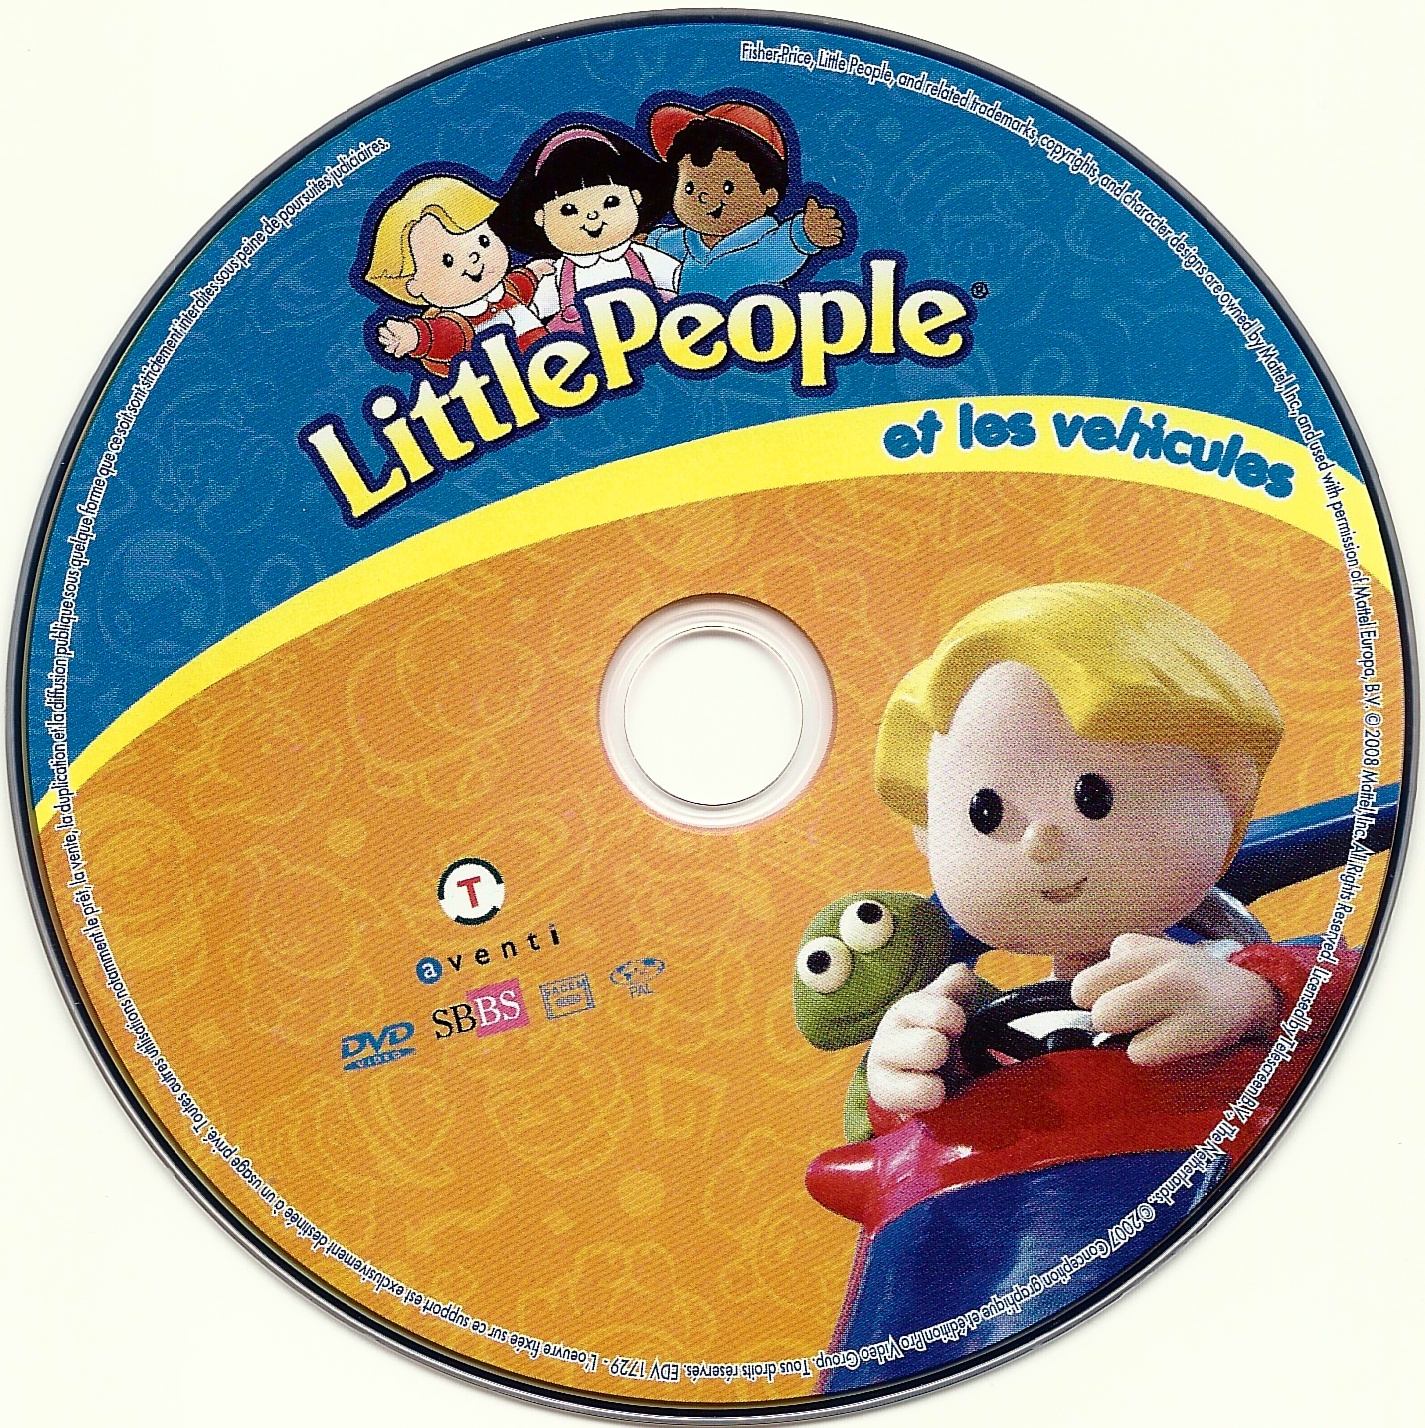 Little people et les vehicules vol 03